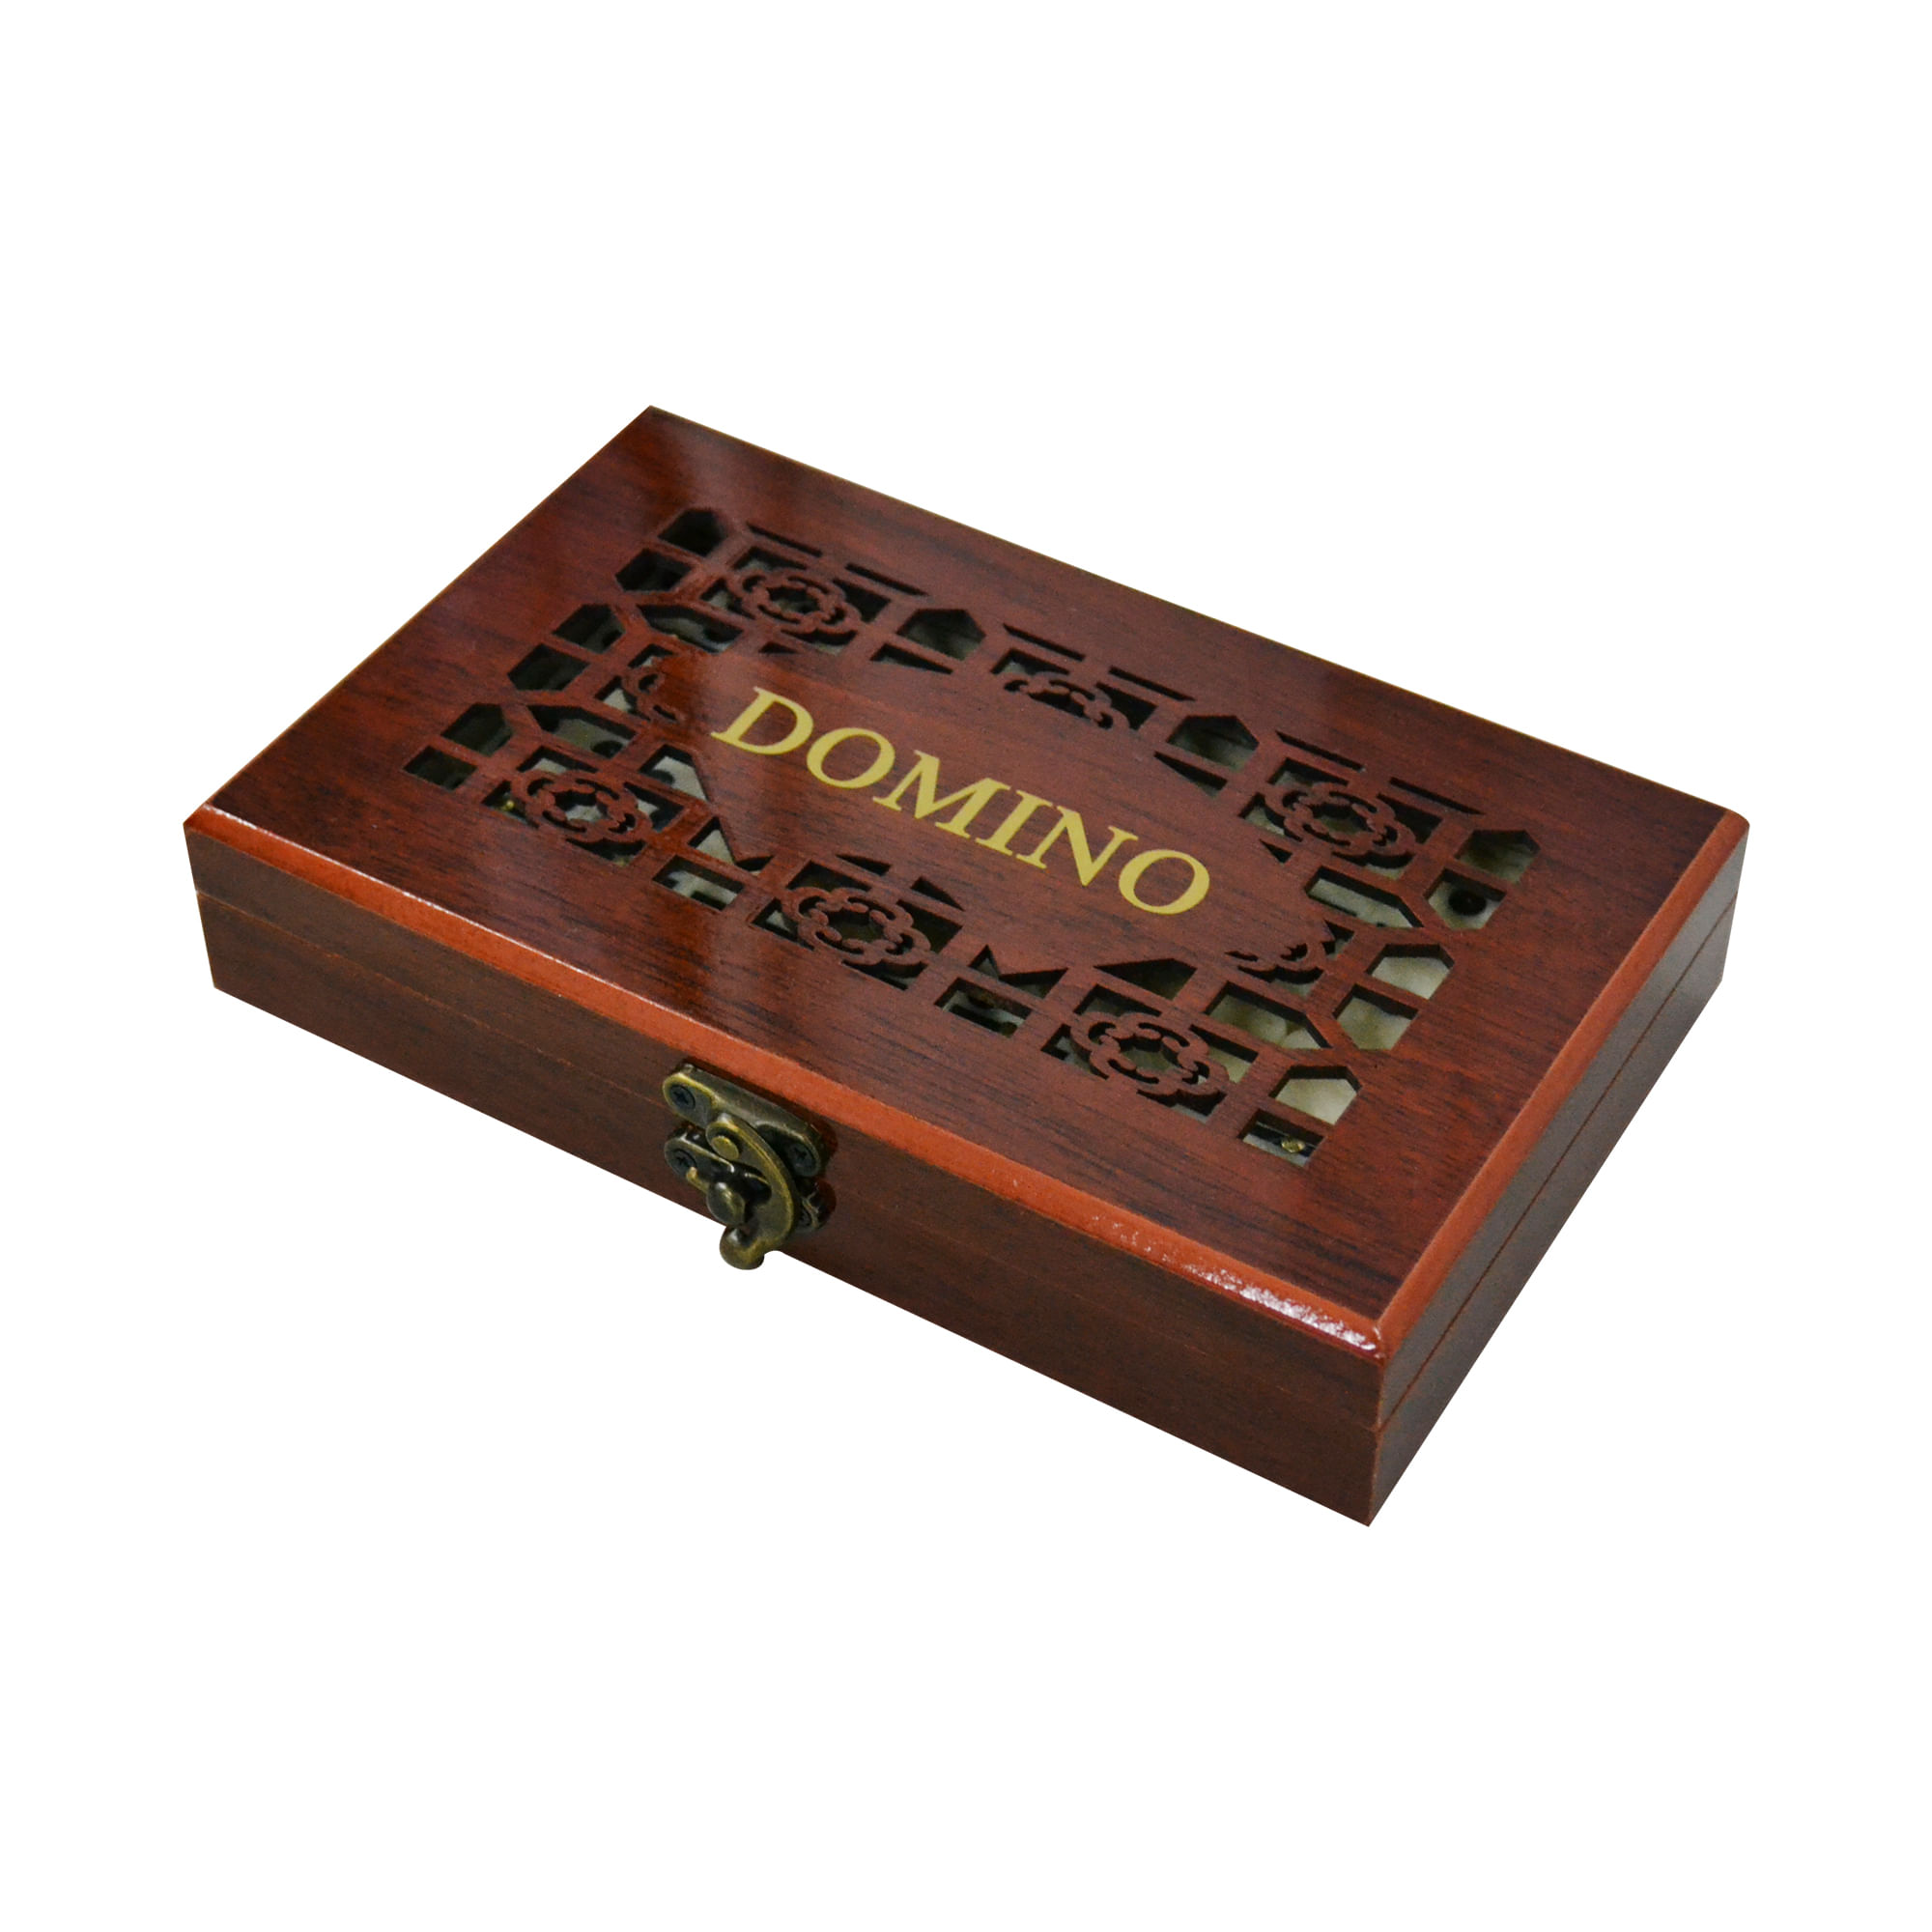 Dominó é um jogo de mesa clássico e popular que envolve um